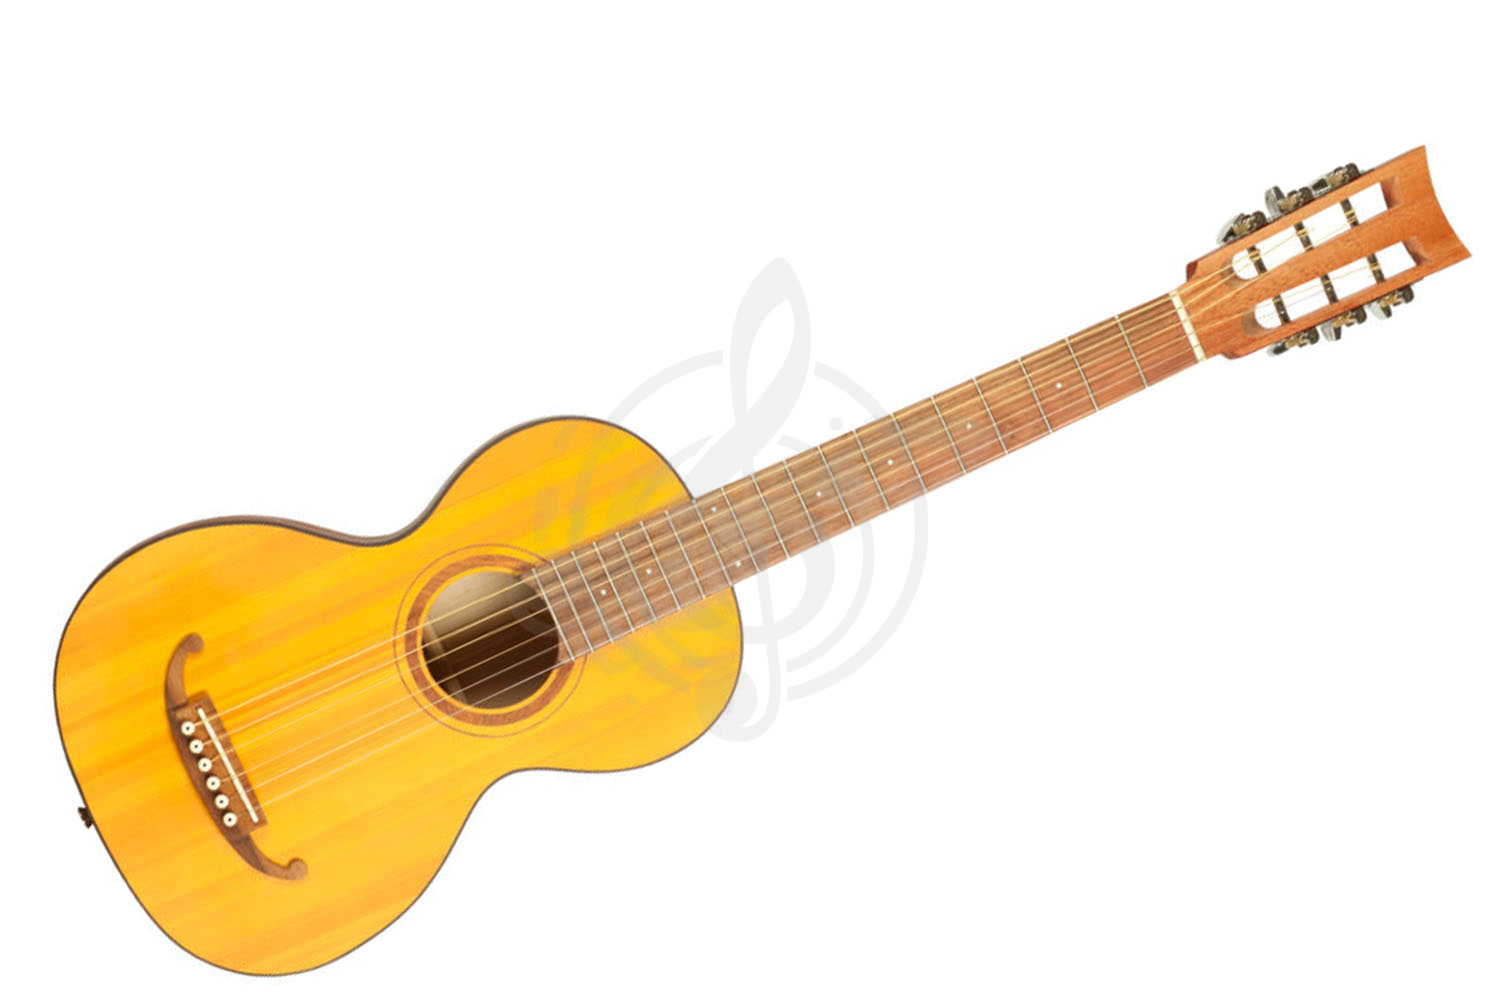 Акустическая гитара Акустические гитары Doff Doff PS - Акустическая гитара парлор - фото 1